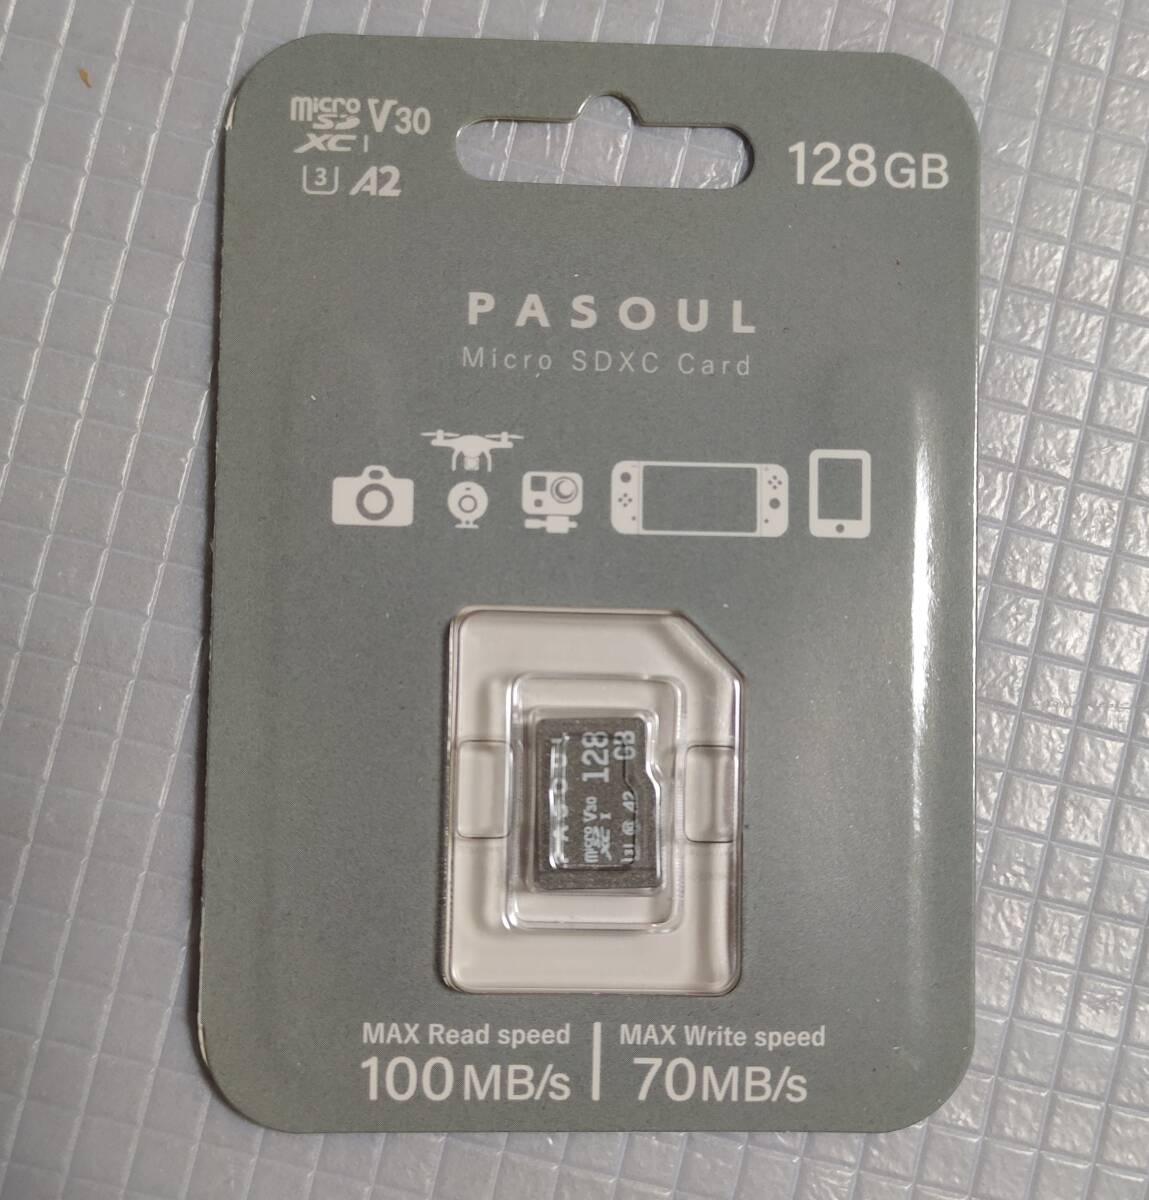  новый товар включая доставку *Pasoul microSDXC карта 128GB высокая эффективность микро SD карта UHS-I U3 V30 A2 стандарт 4K Ultra HD